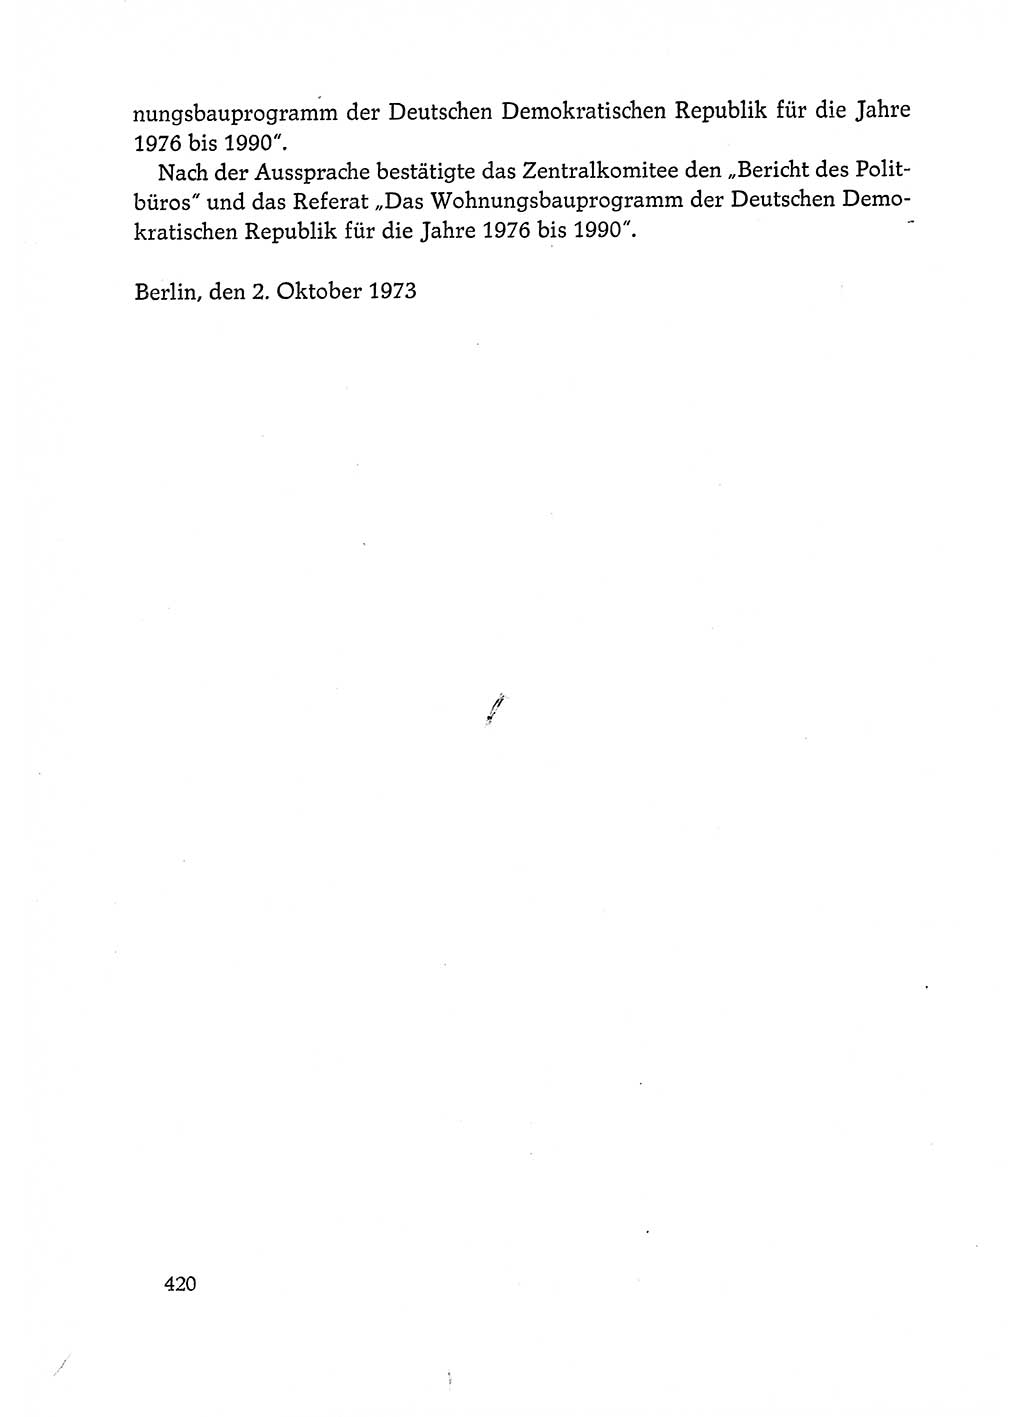 Dokumente der Sozialistischen Einheitspartei Deutschlands (SED) [Deutsche Demokratische Republik (DDR)] 1972-1973, Seite 420 (Dok. SED DDR 1972-1973, S. 420)